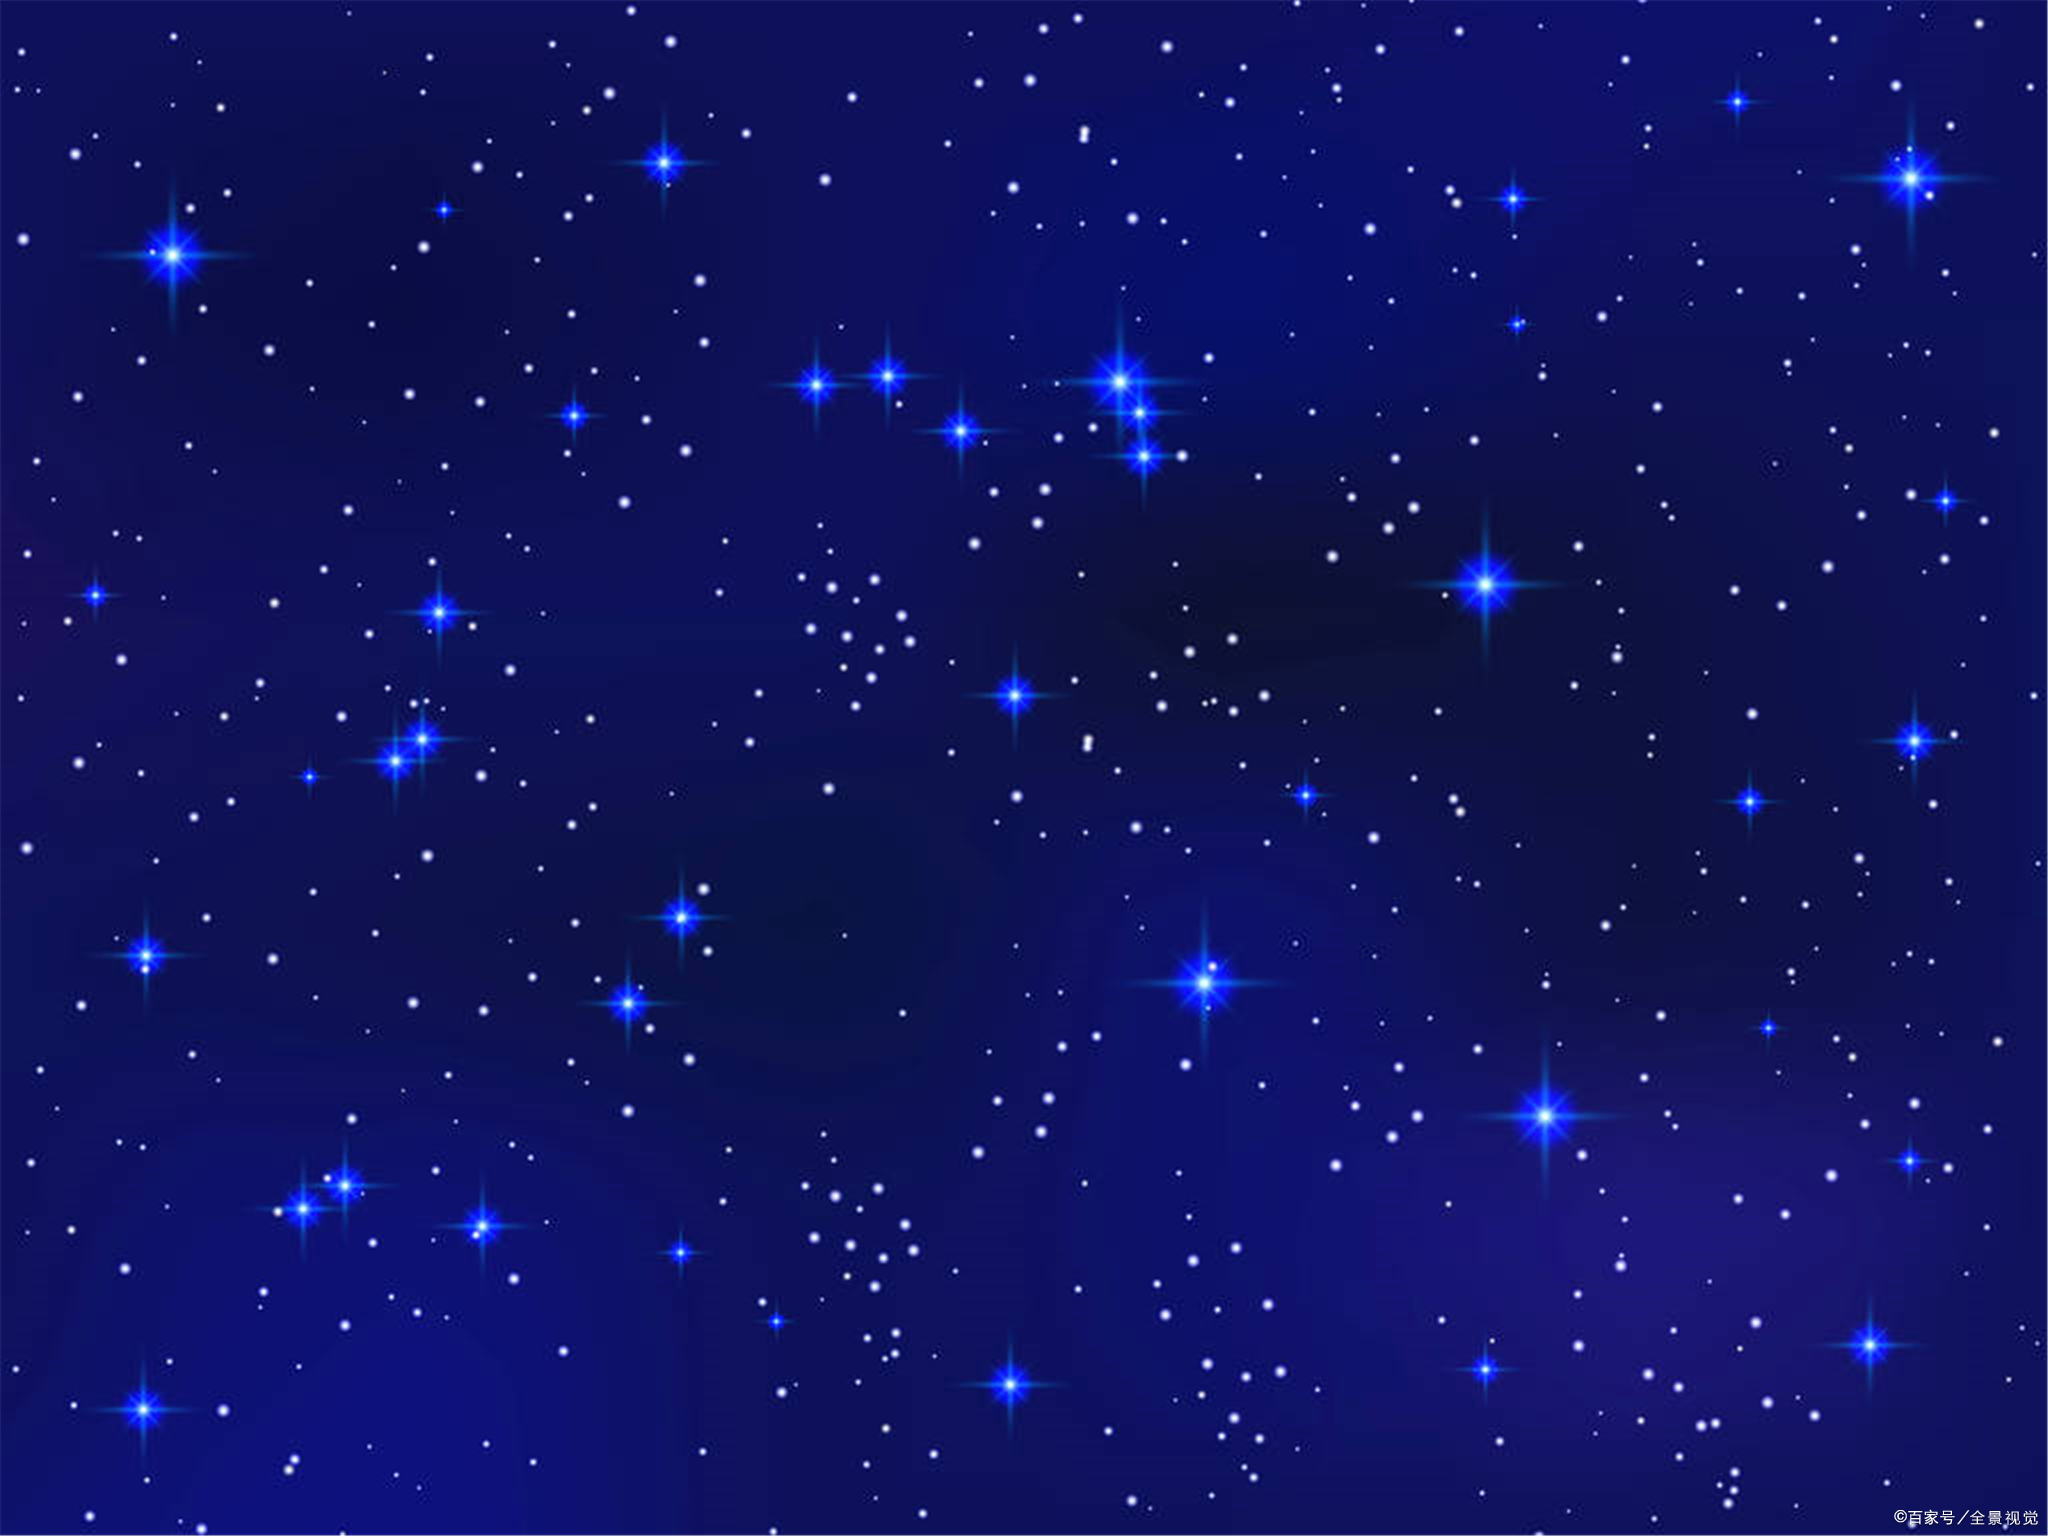 星座中上升星座是什么意思,上升星座和月亮星座